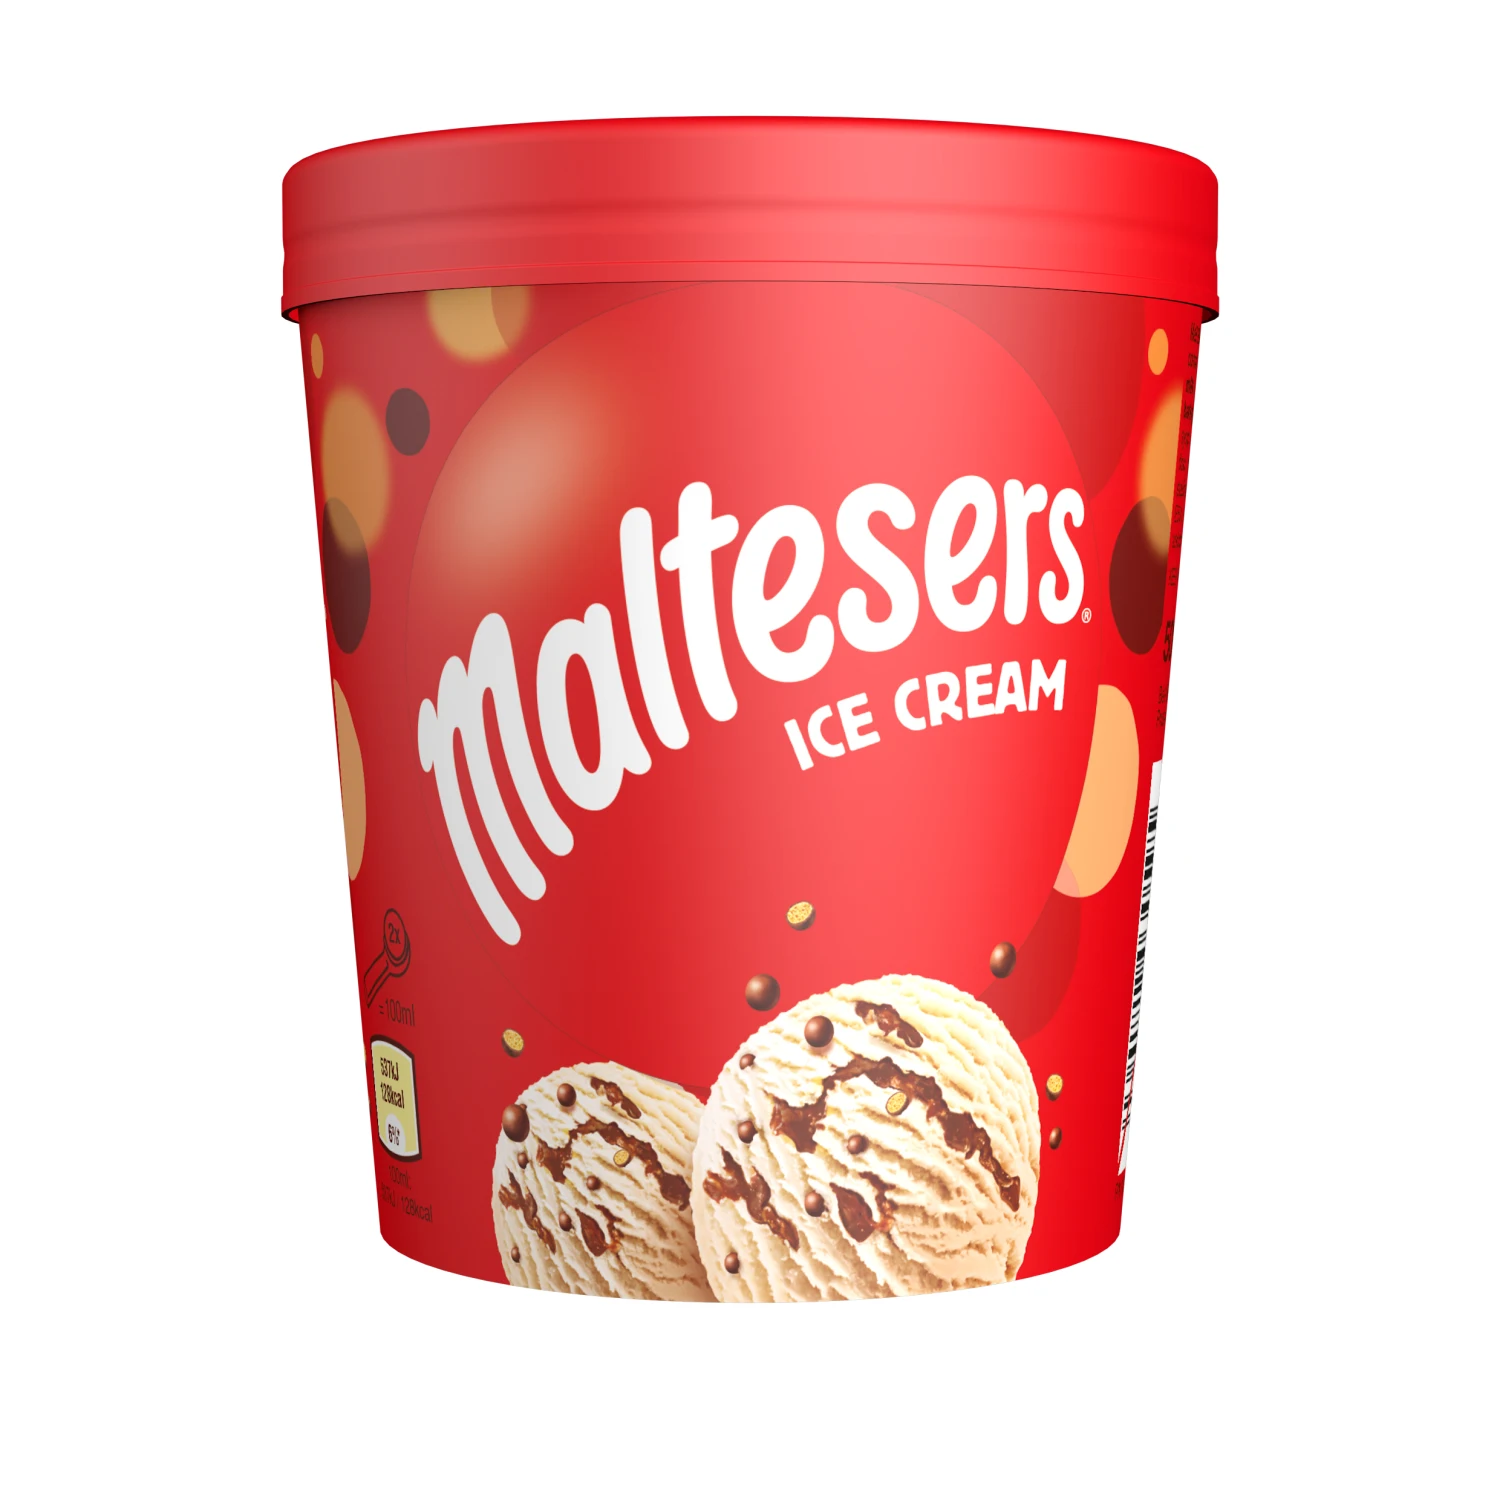 آيس كريم مالتيزر Maltesers ice cream